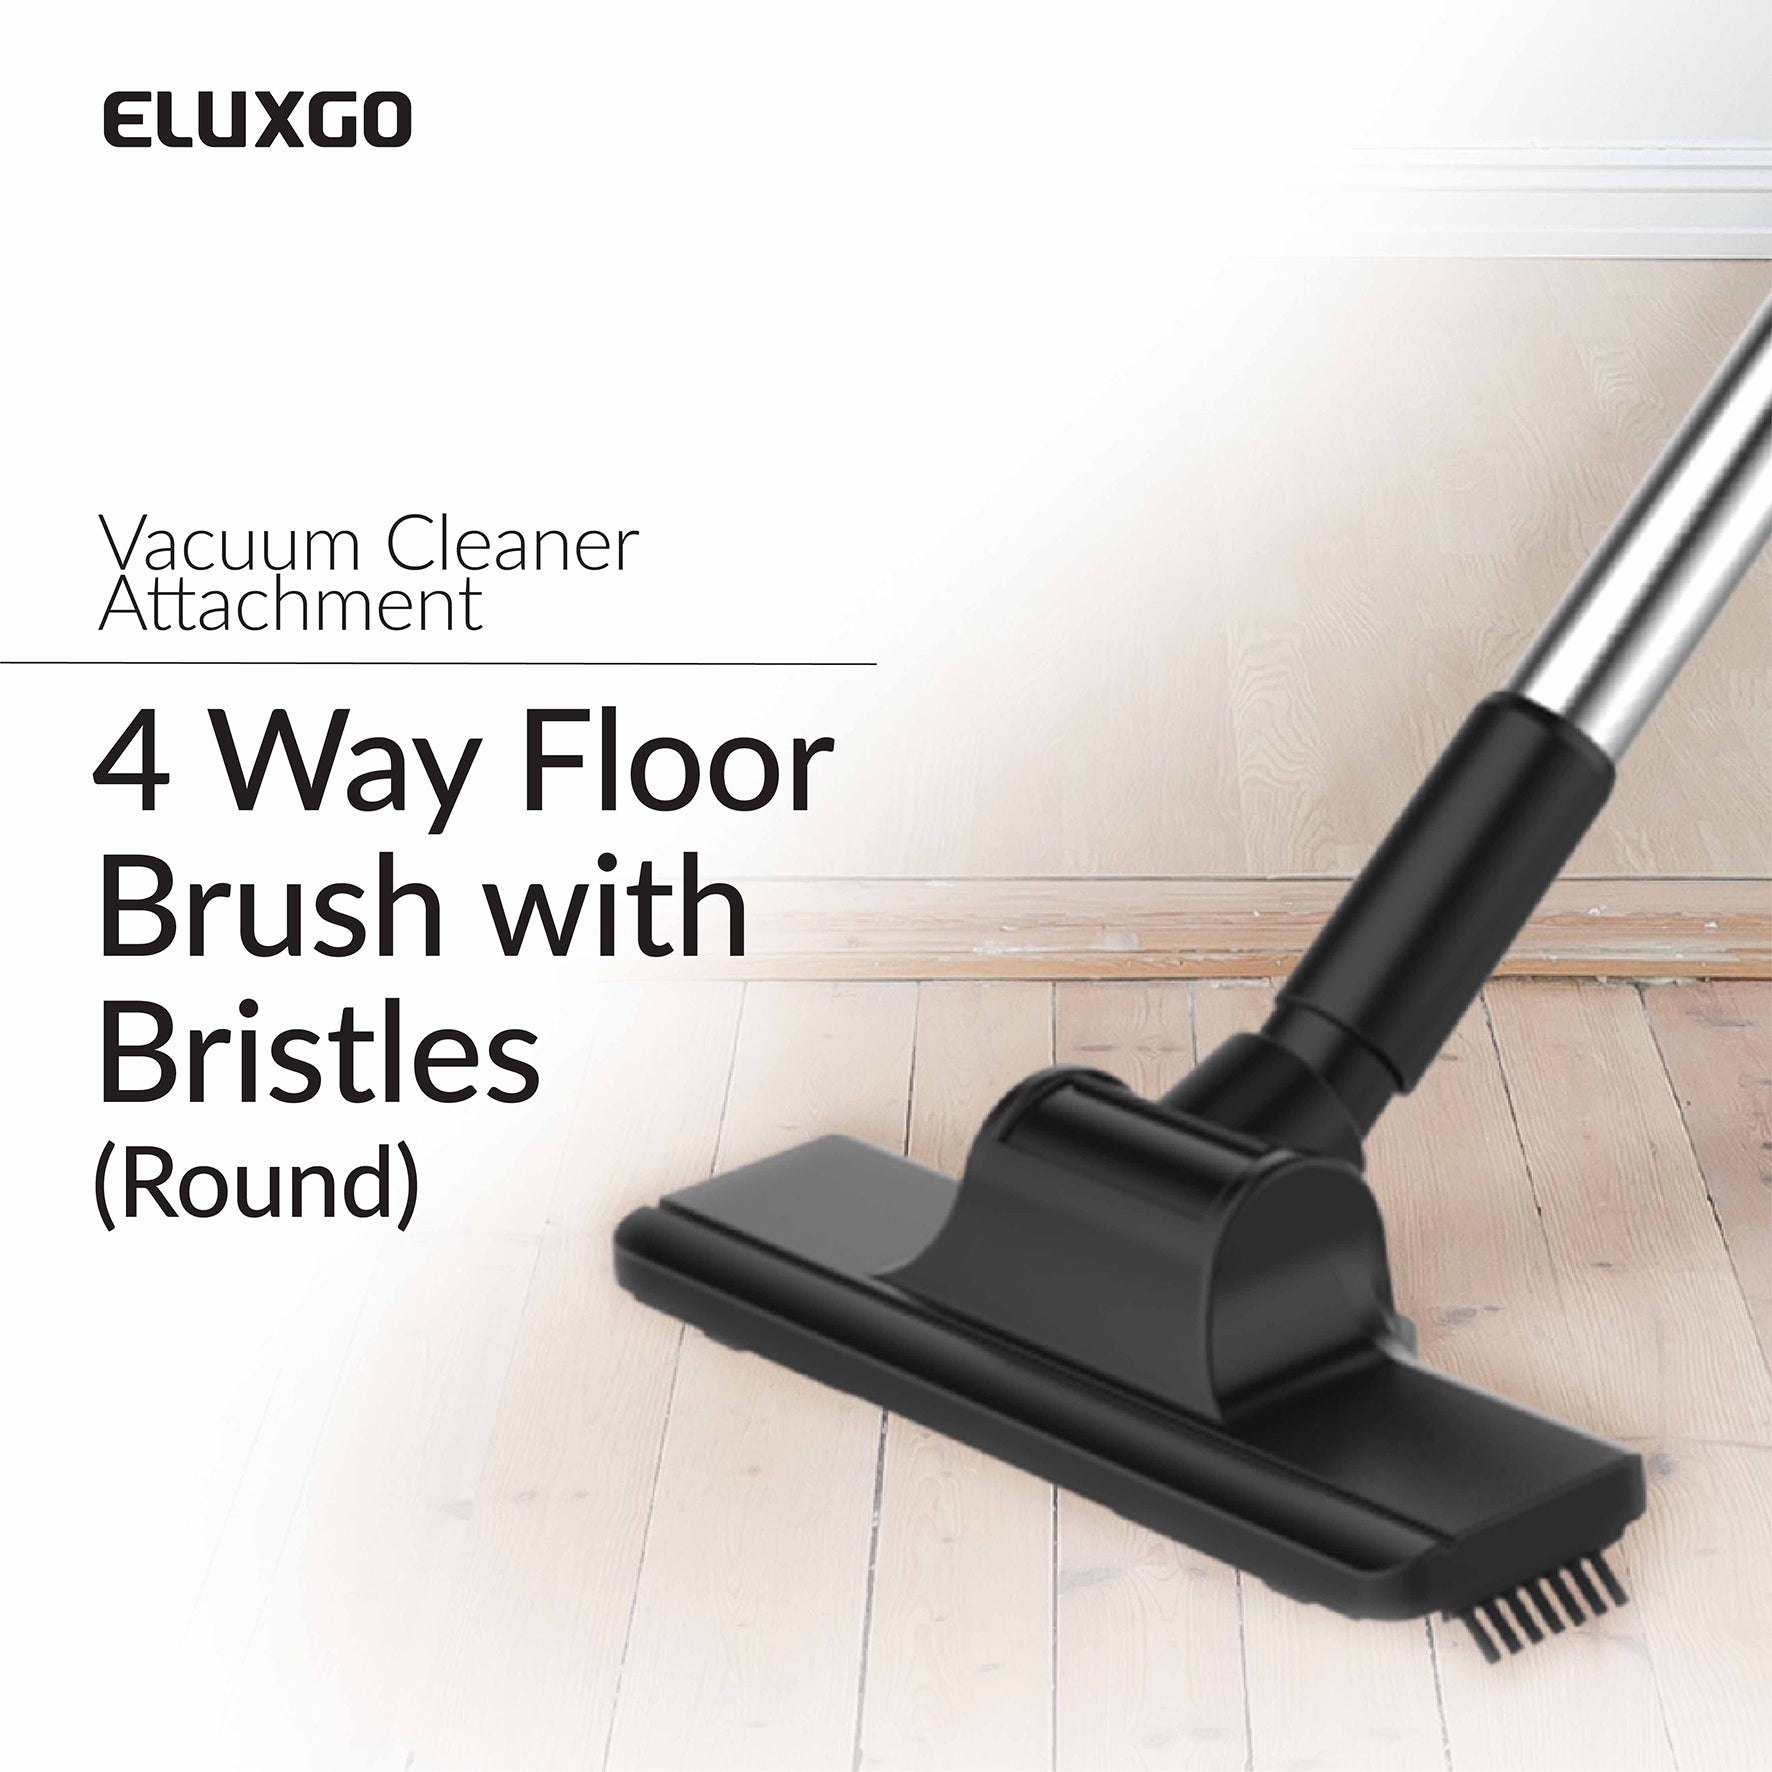 Eluxgo-Vacuum Cleaner-4 Way-Floor Brush-Bristles-Round Pipe